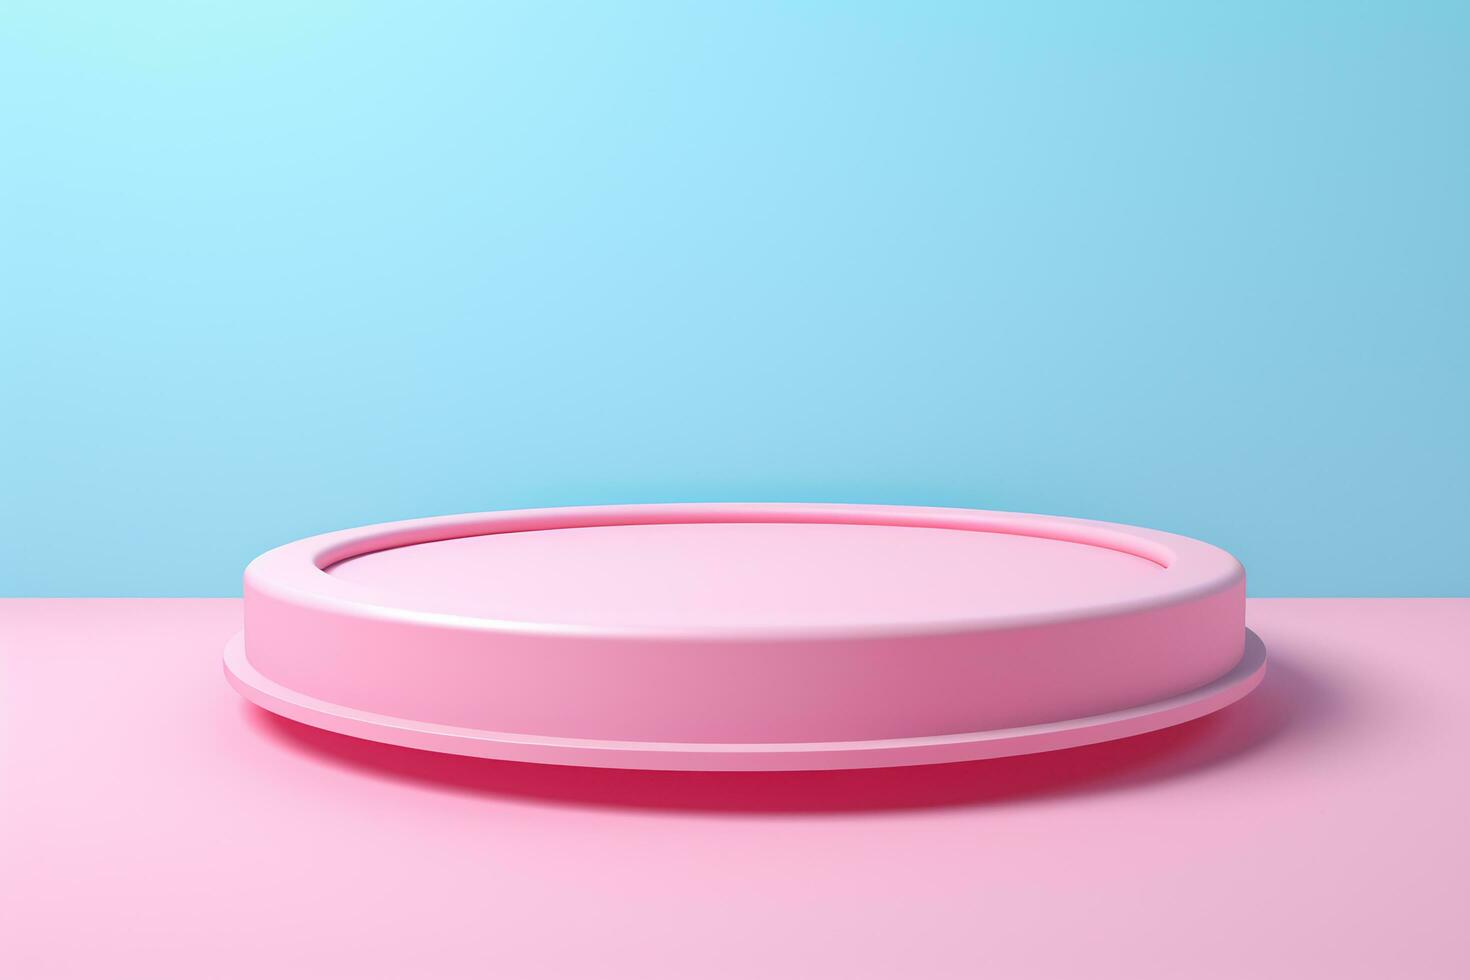 Pink product podium on blue background photo